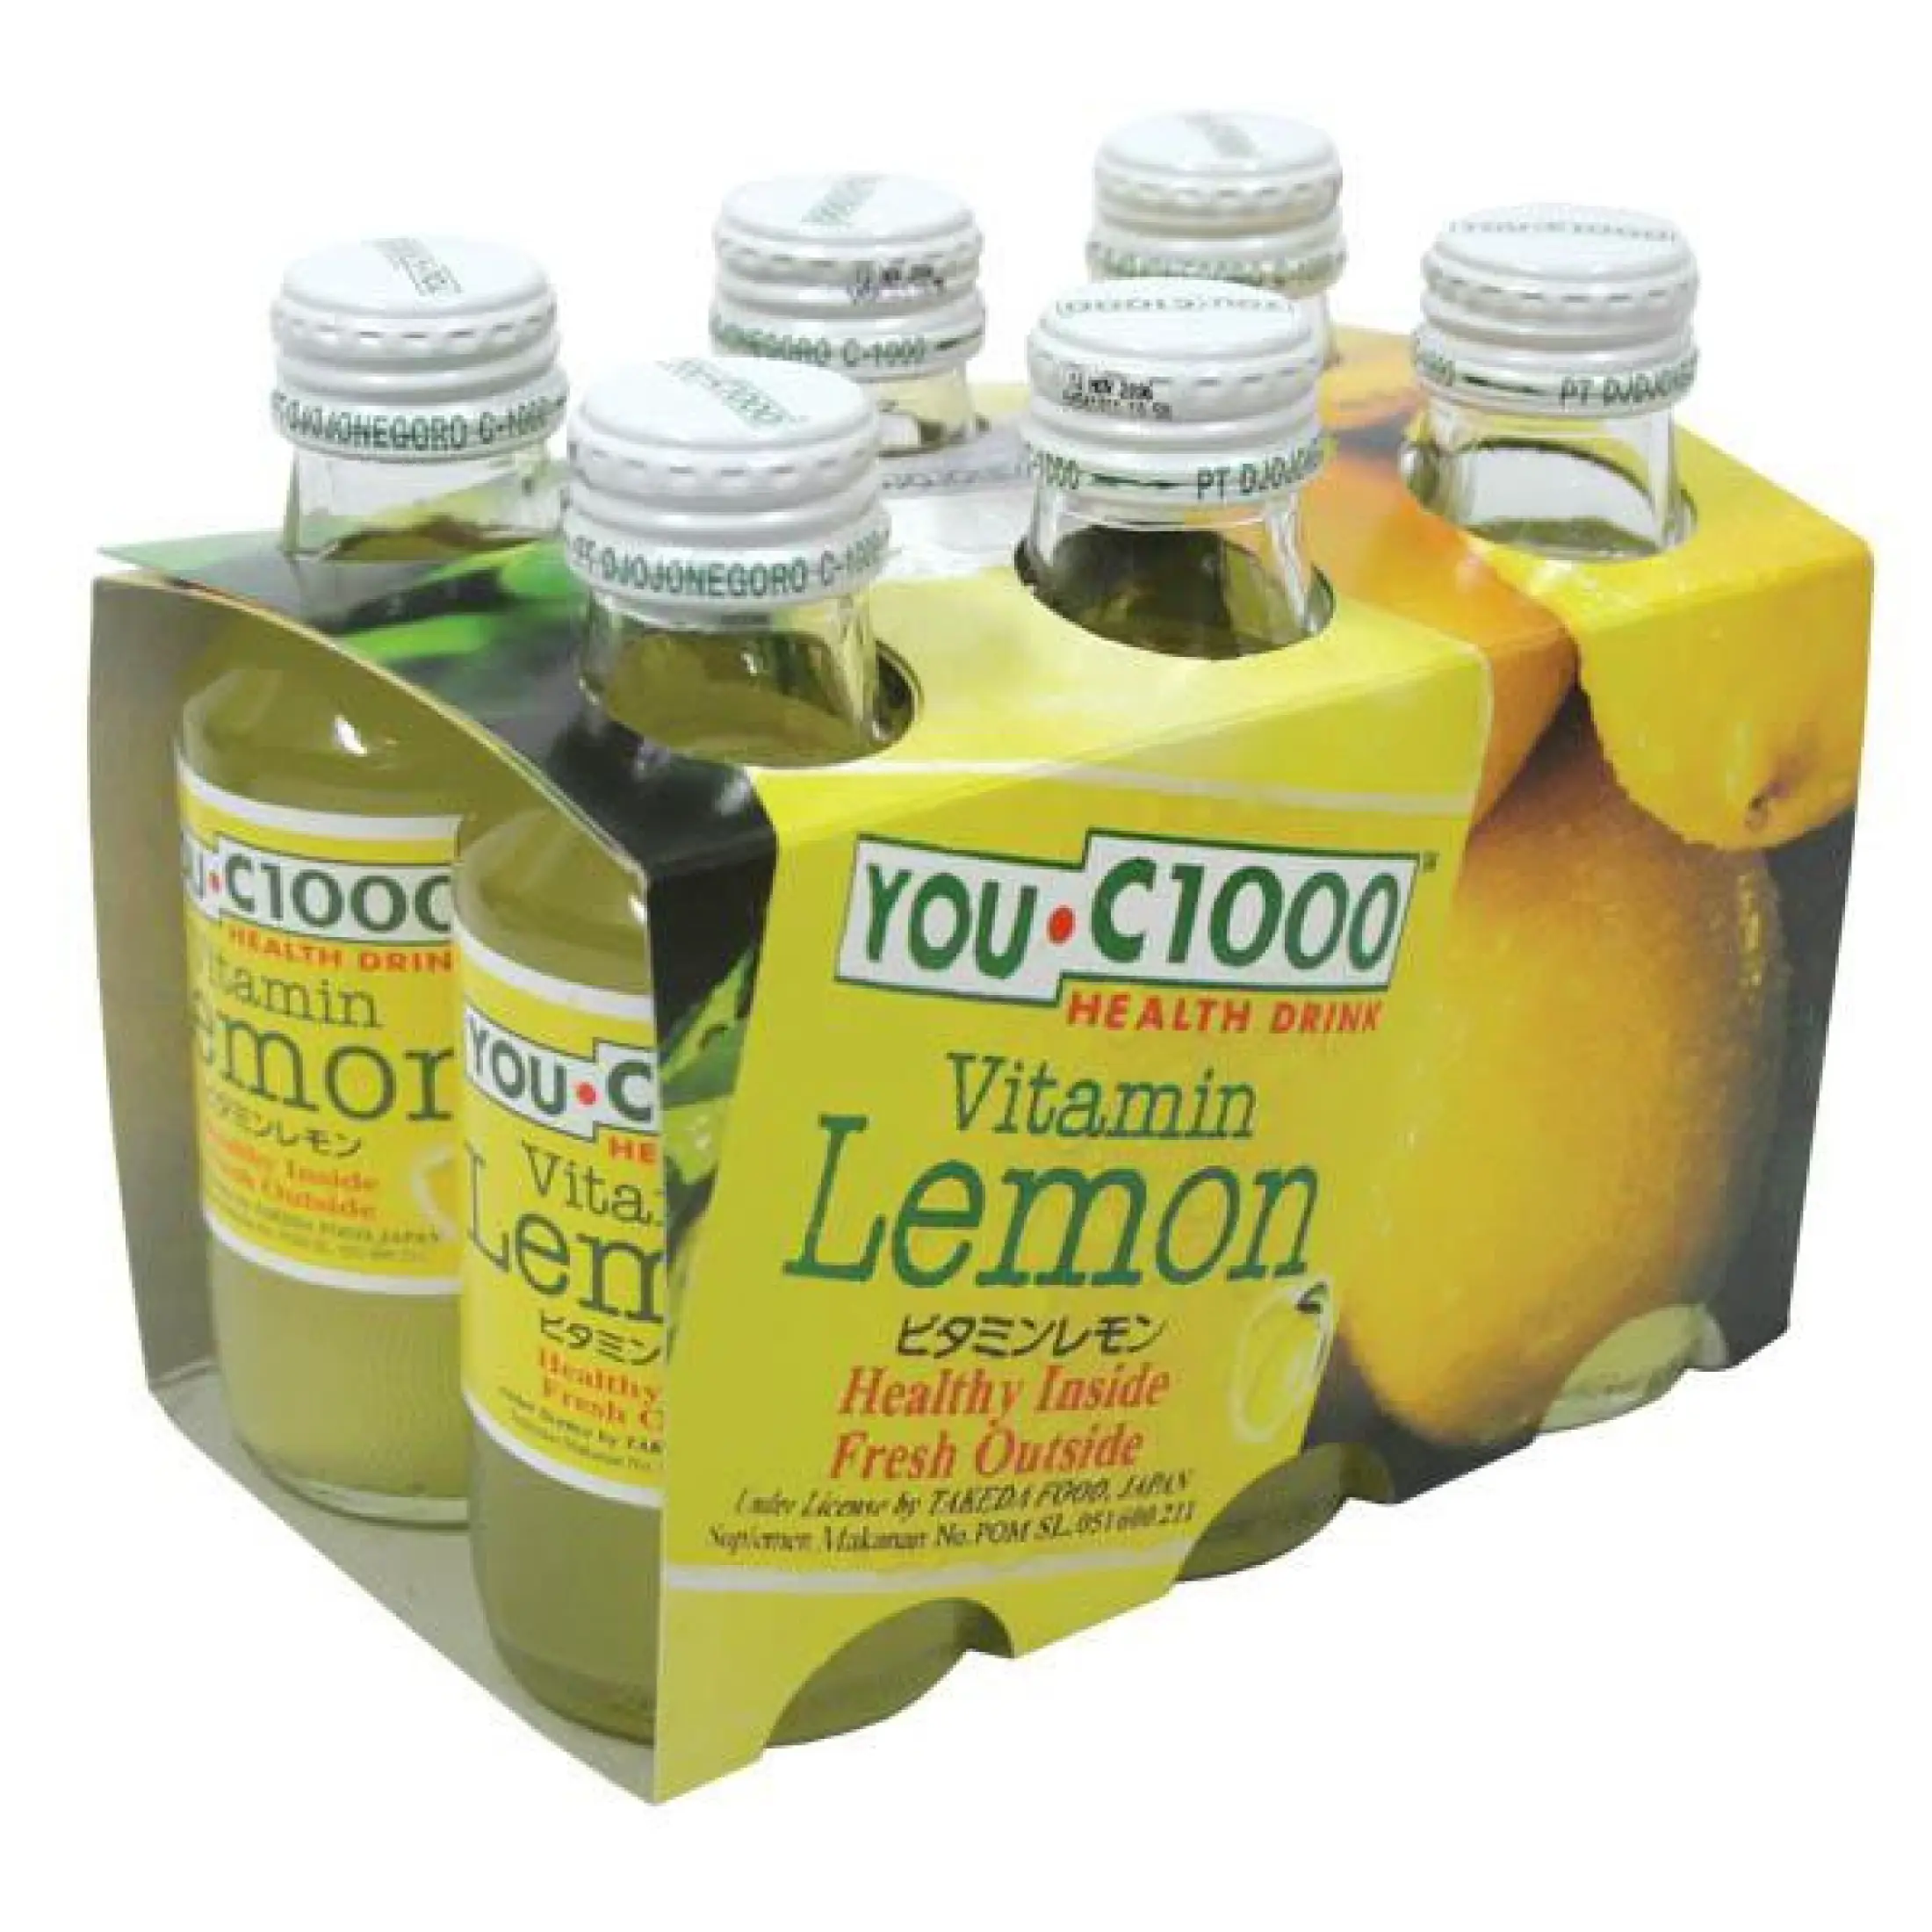 You C 1000 Lemon 140 Ml Paket 6 Botol Minuman Vitamin C1000 Minuman Isotonik Vit C 1000 Mg Lazada Indonesia